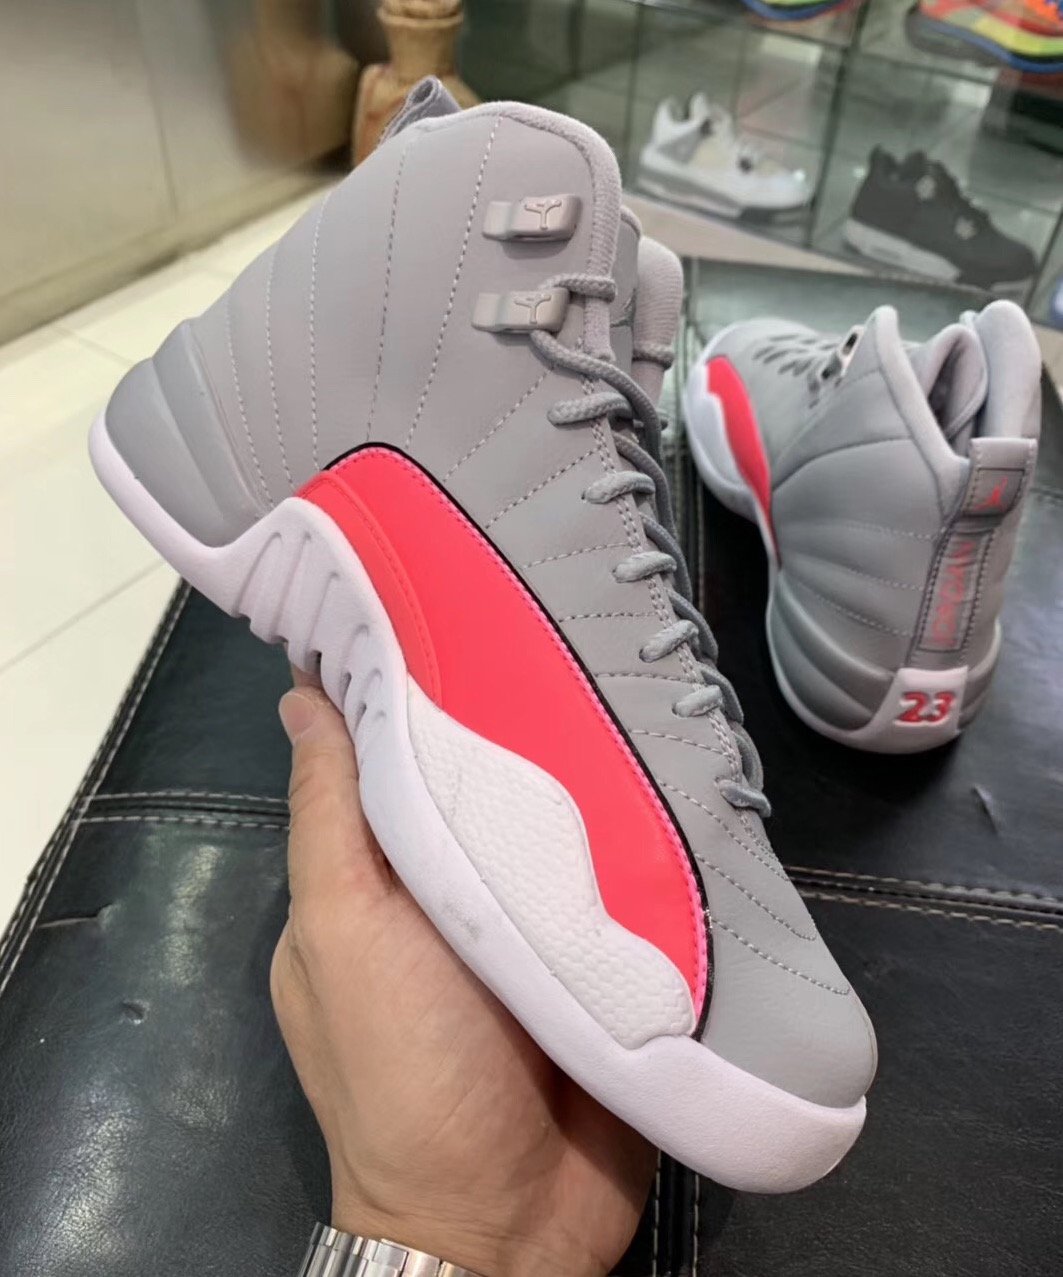 gray and pink jordan 12